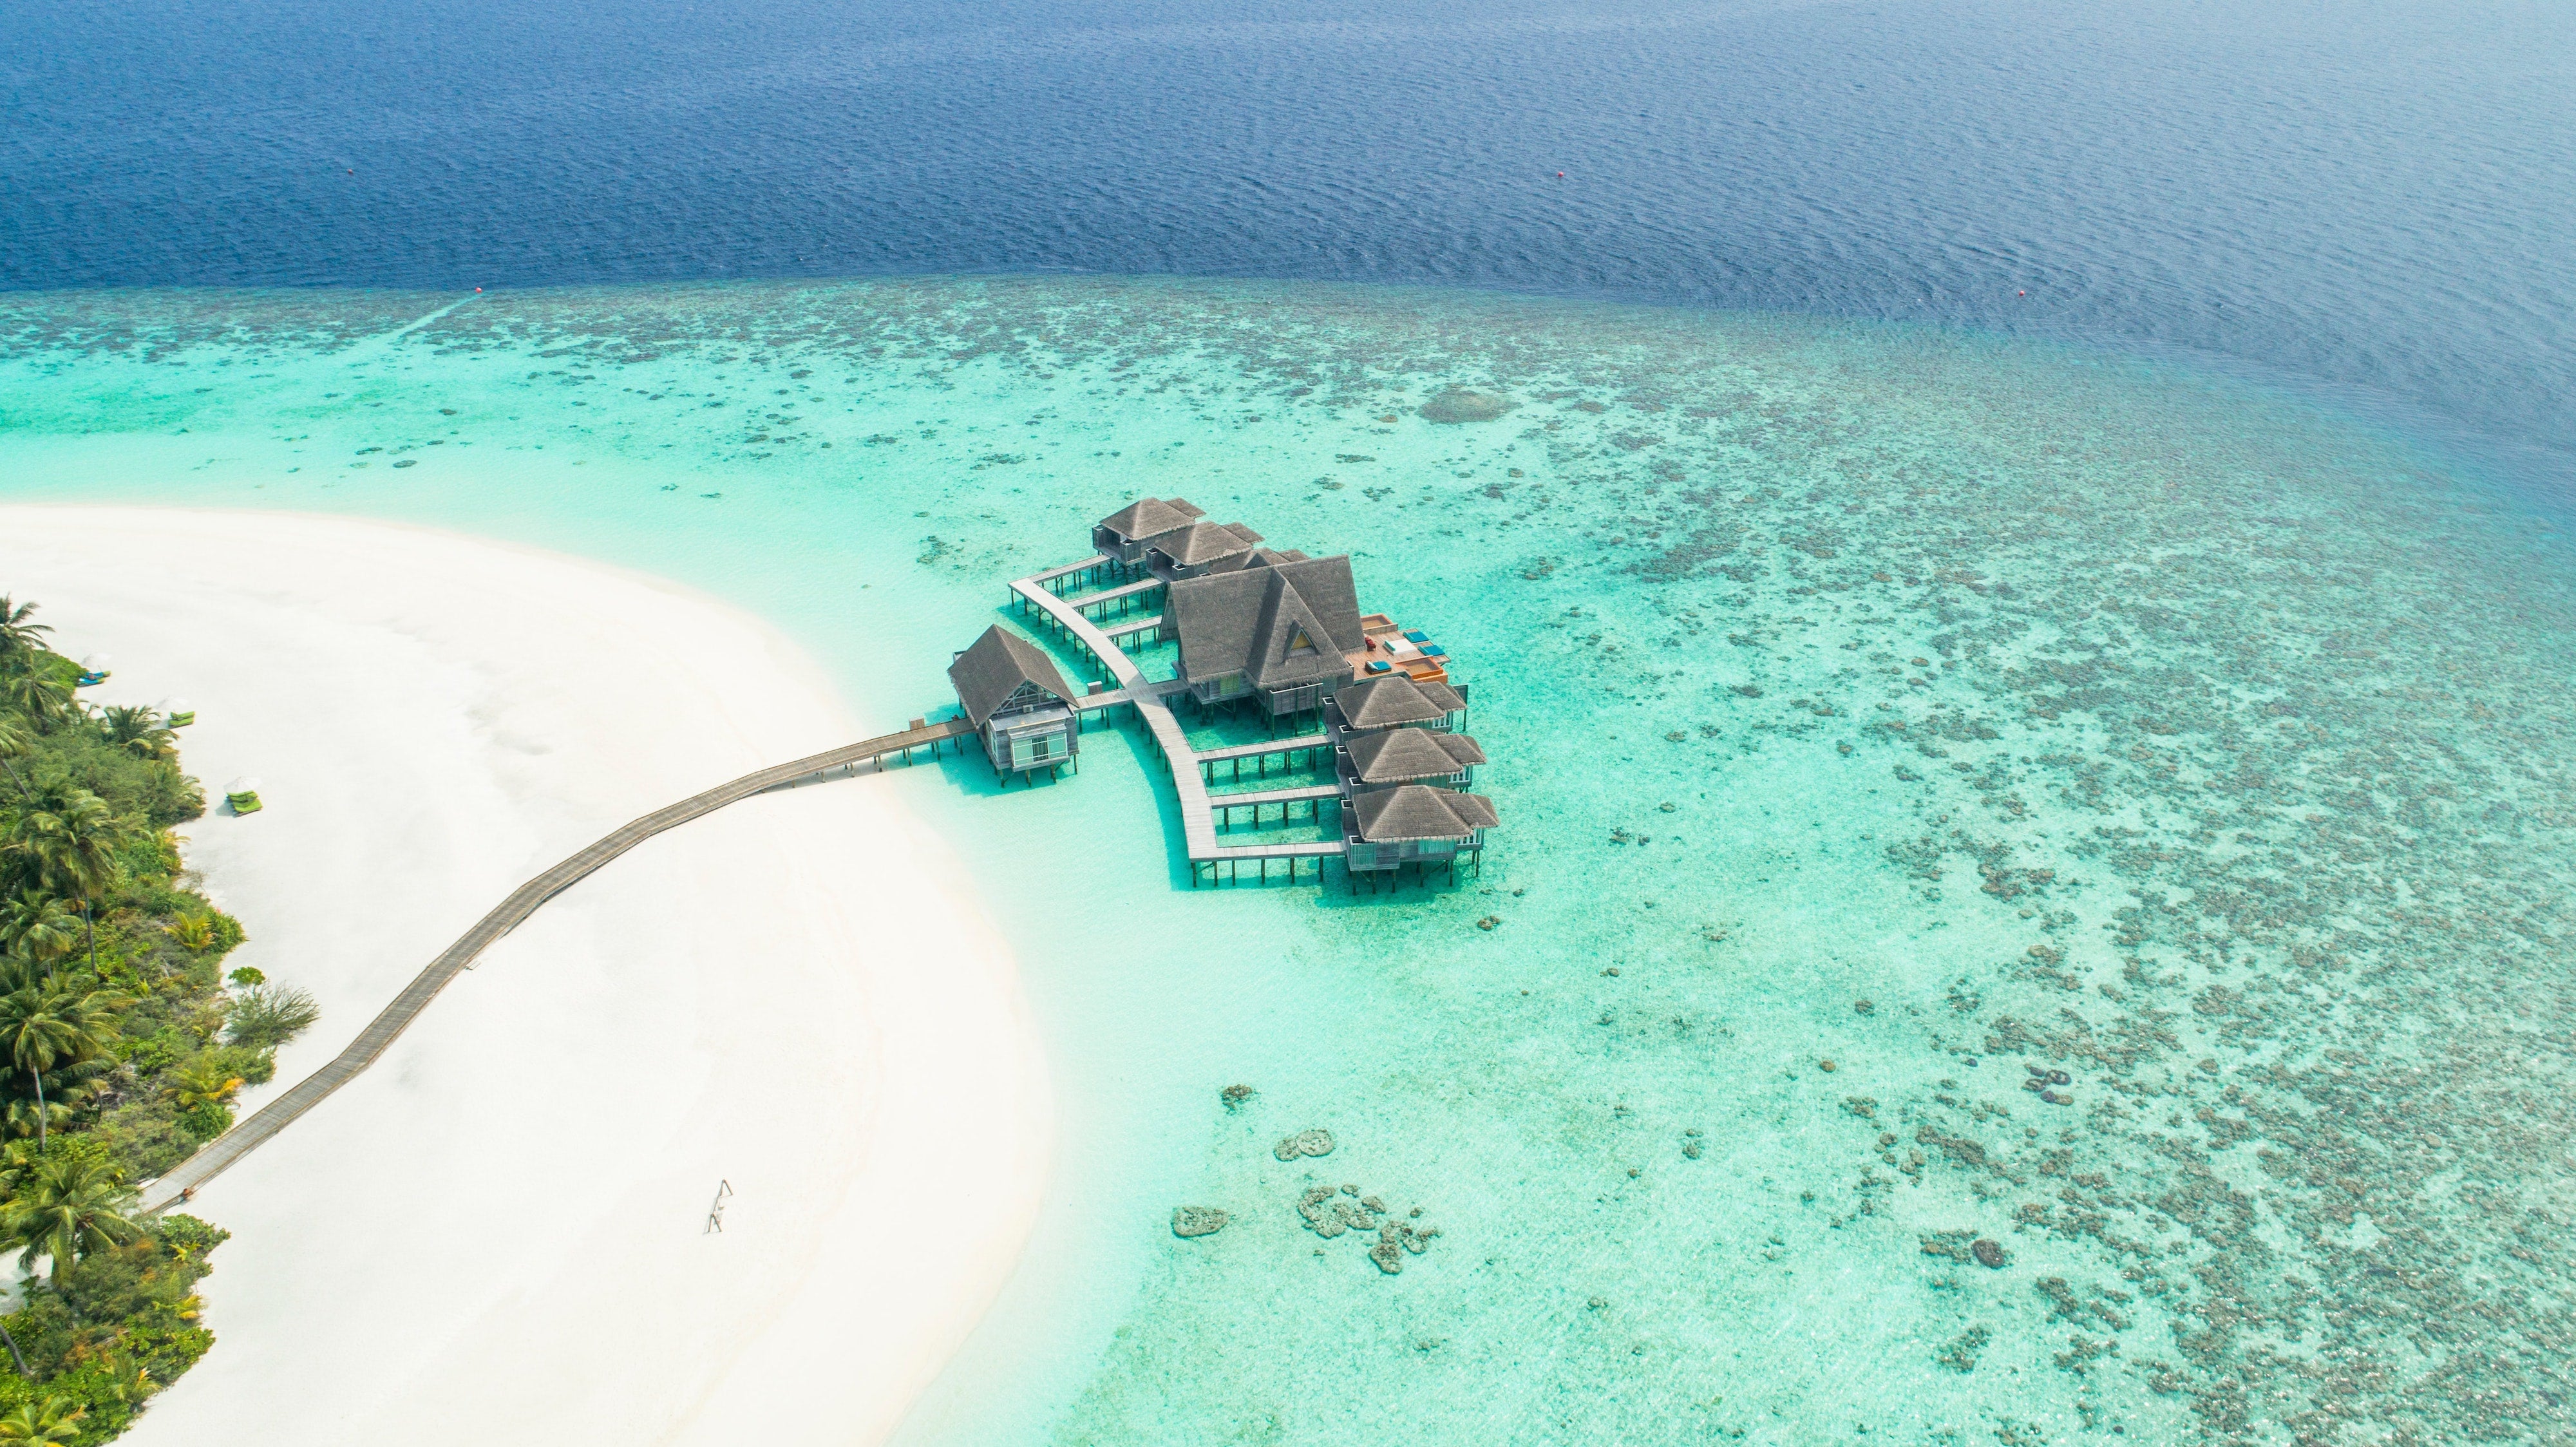 Take me to the Maldives!